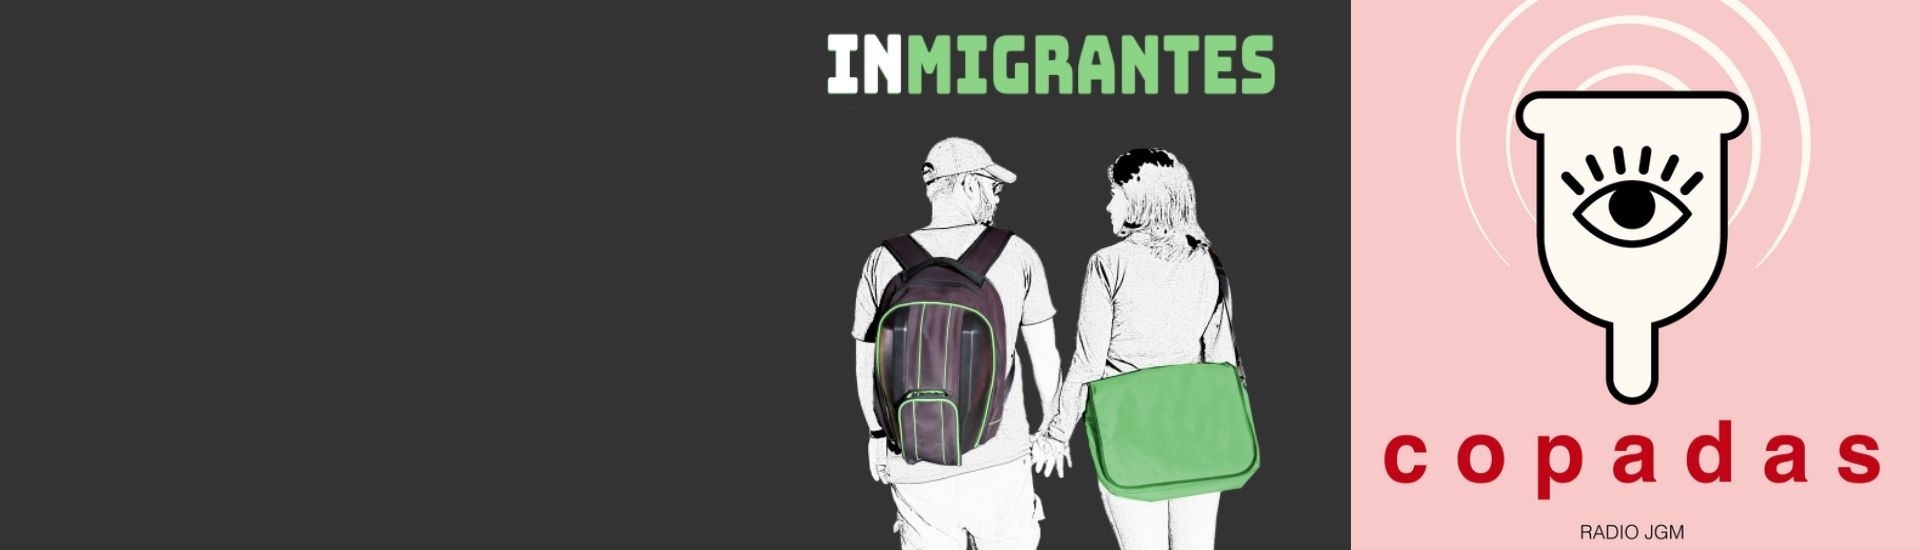 en la foto izquierda está el logo de migrantes, una mujer y un hombre. En la fotografía de la derecha aparece una copa menstrual ilustrada con un ojo en medio y en tonos rosados pasteles